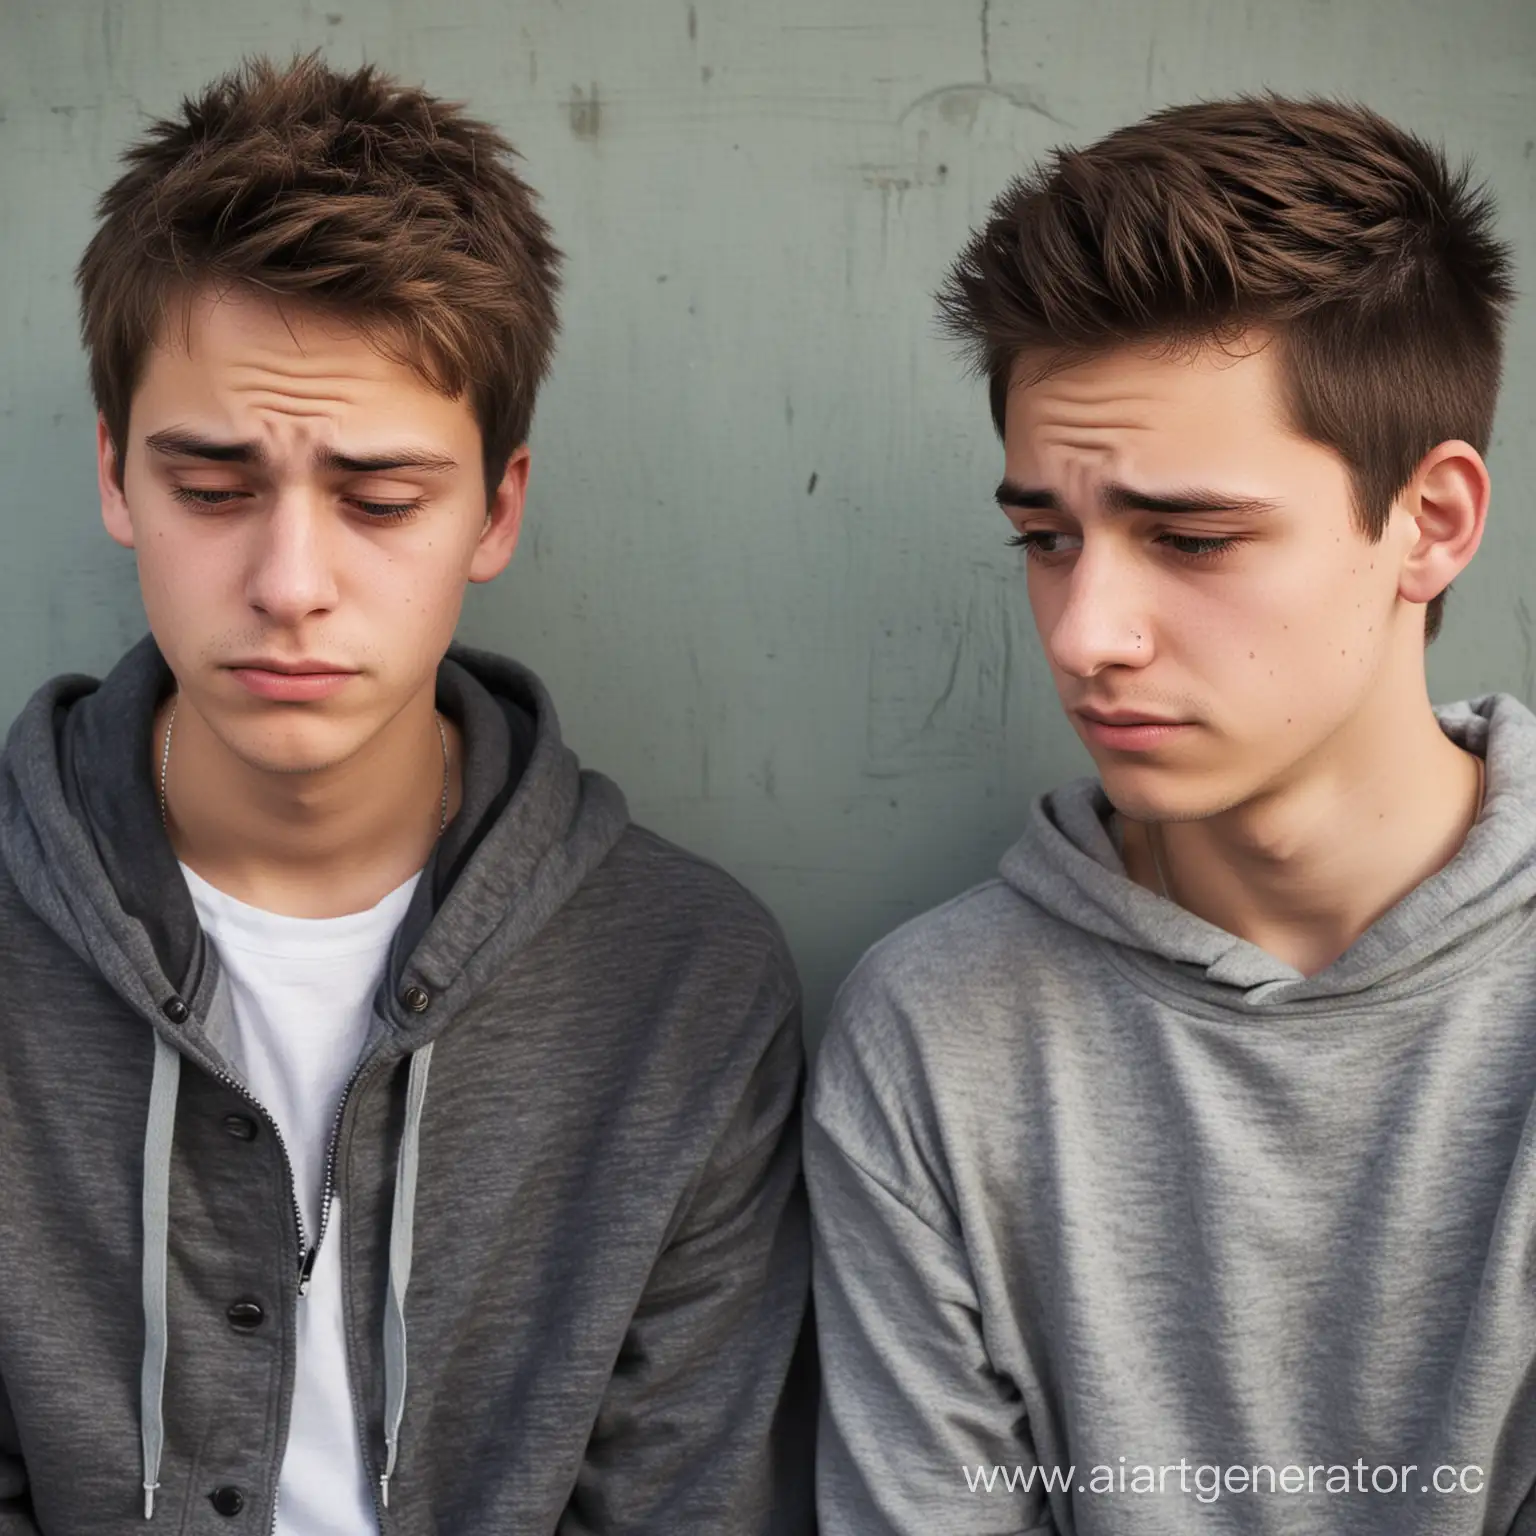 двое парней парней
подростки разговор грусть\